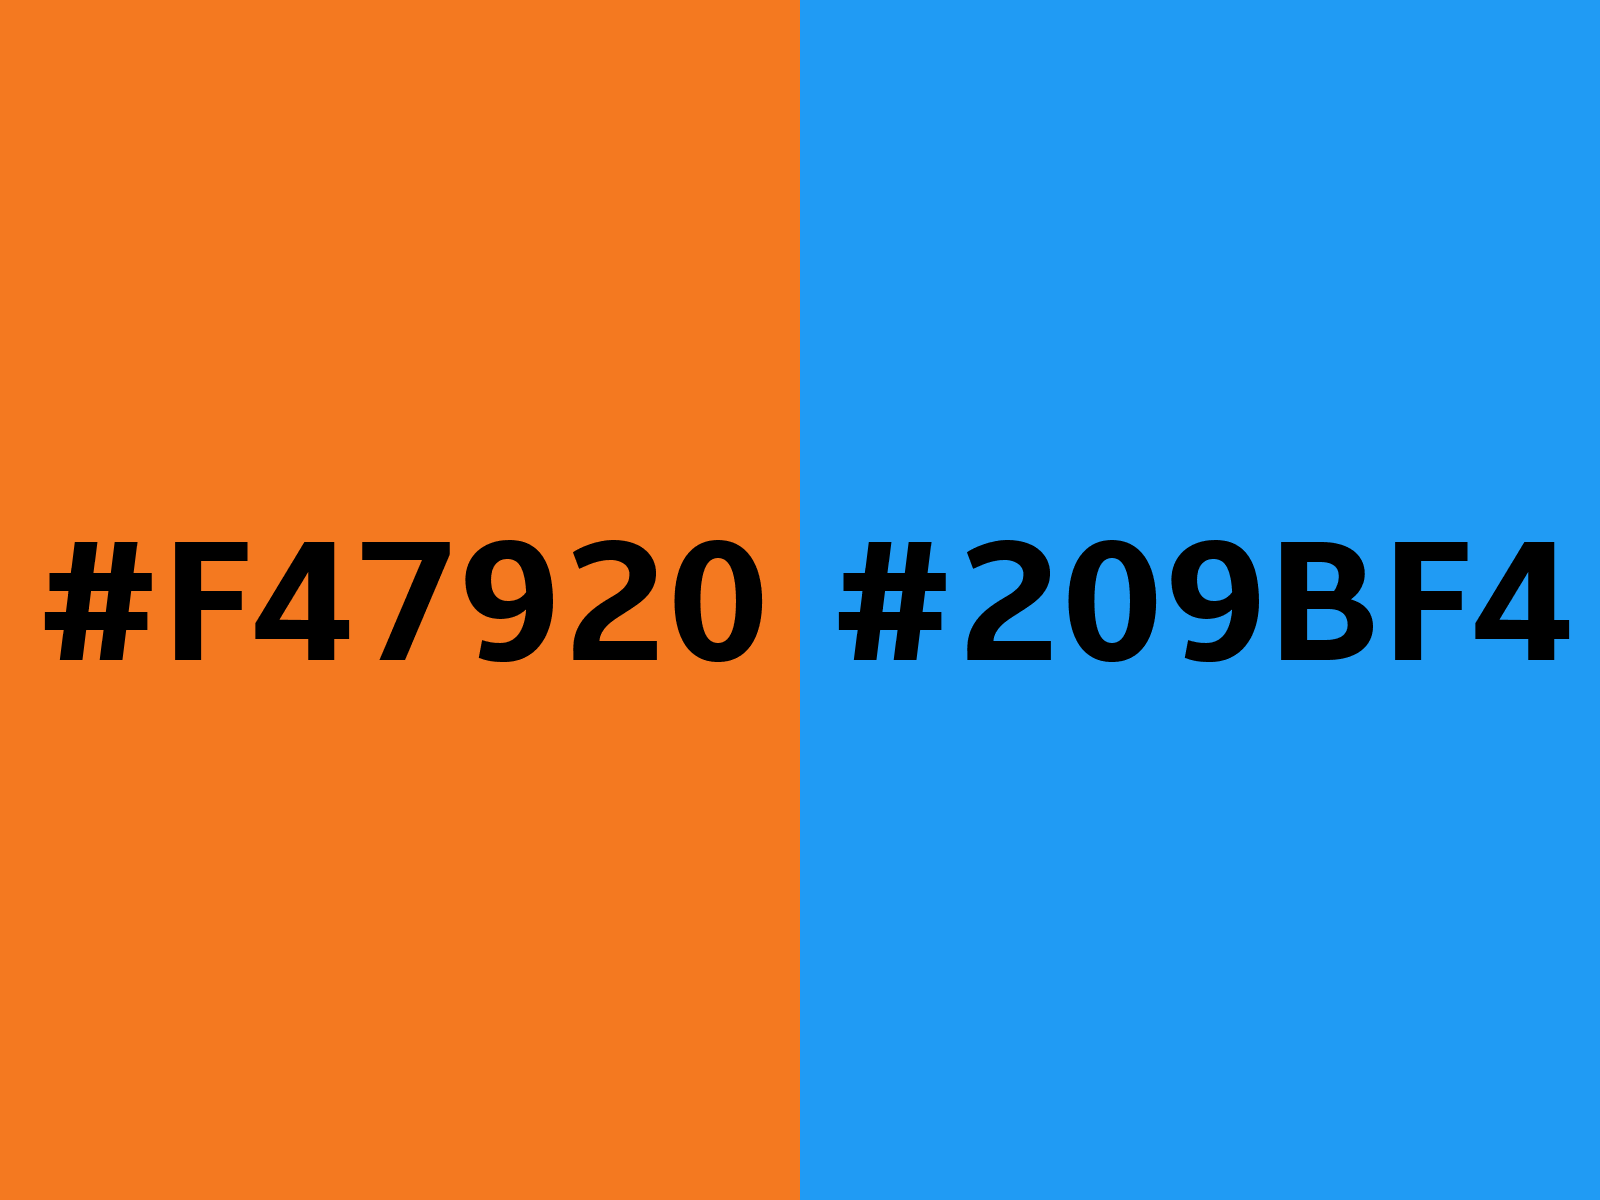 F4D00C Hex Color, RGB: 244, 208, 12